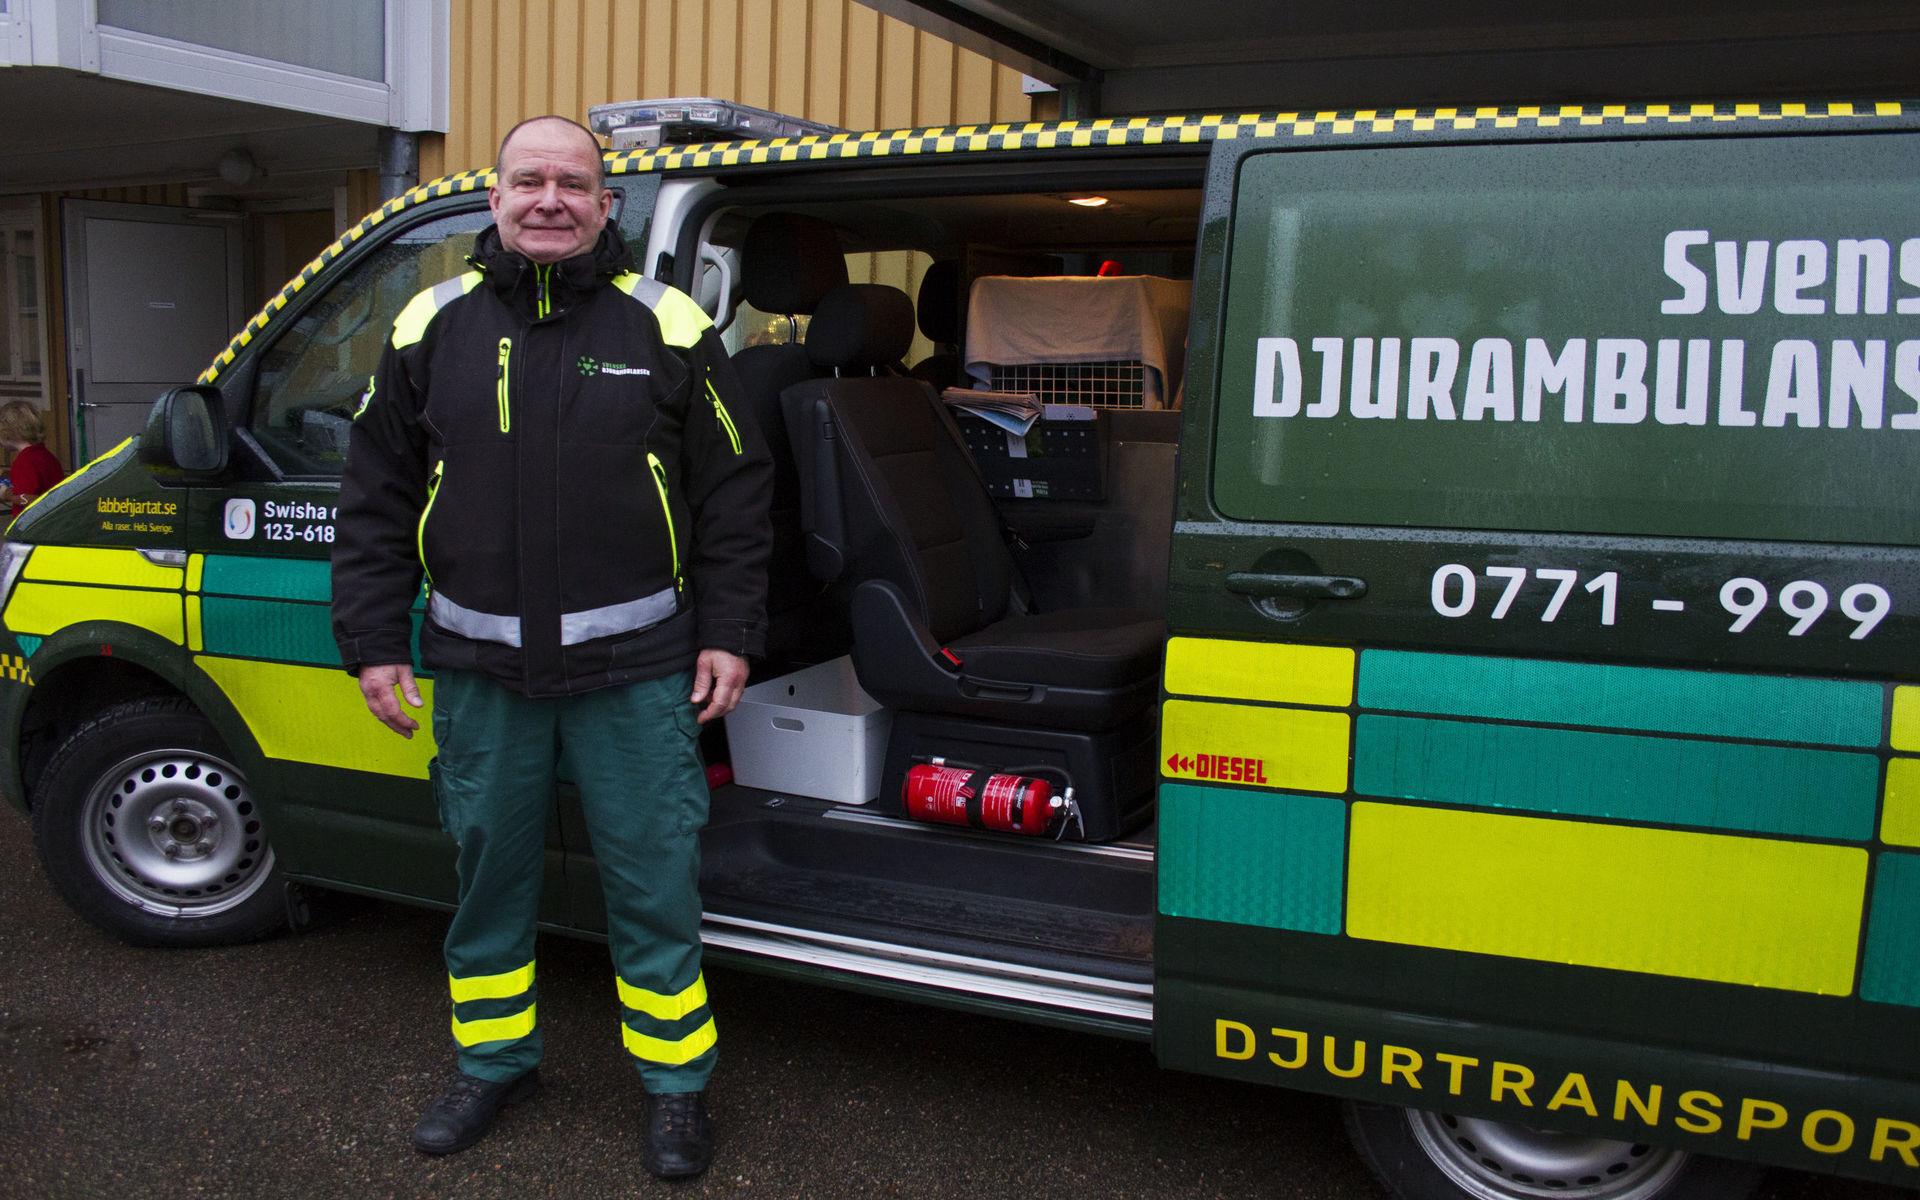 Kalle Pantzare, volontär hos djurambulansen, kunde berätta om sin ambulans när djurhemmet invigdes.